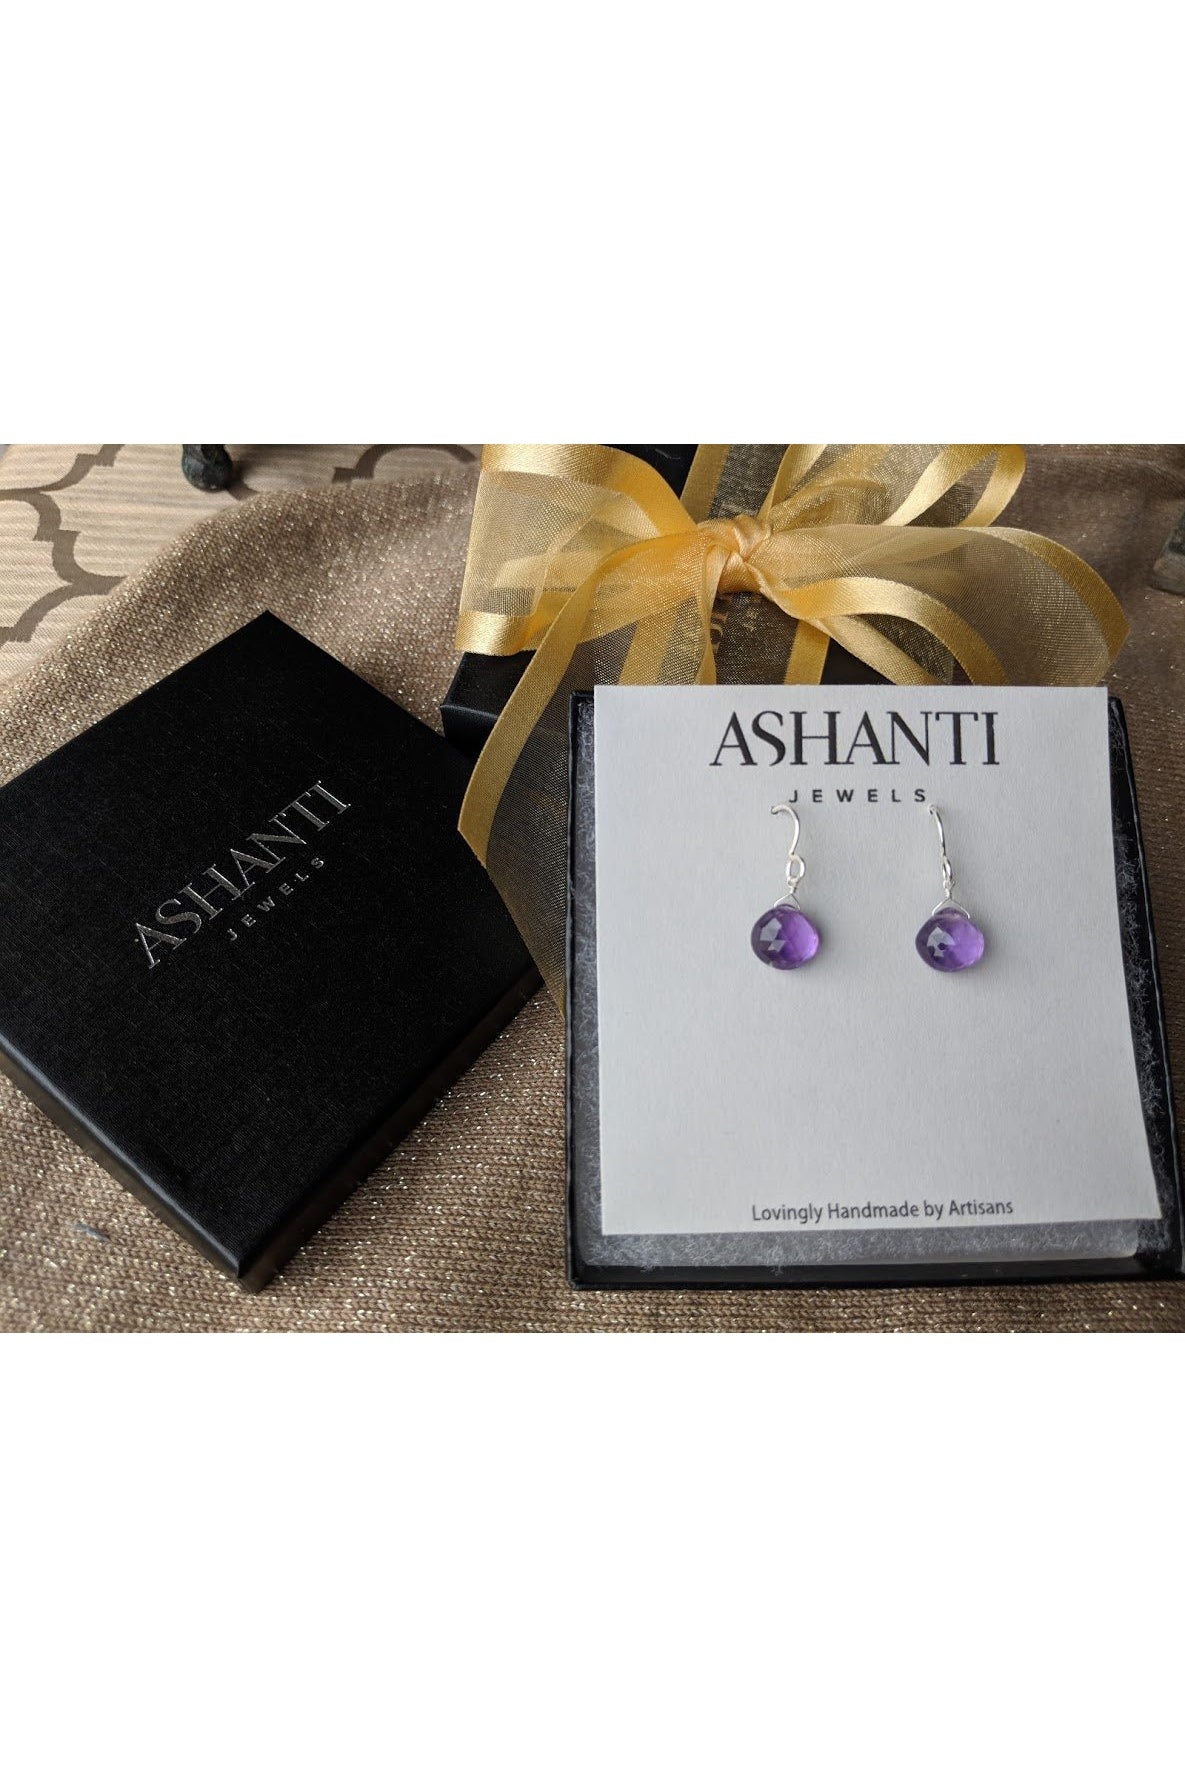 Purple Amethyst, Teardrop, February Birthstone Gemstone Earrings